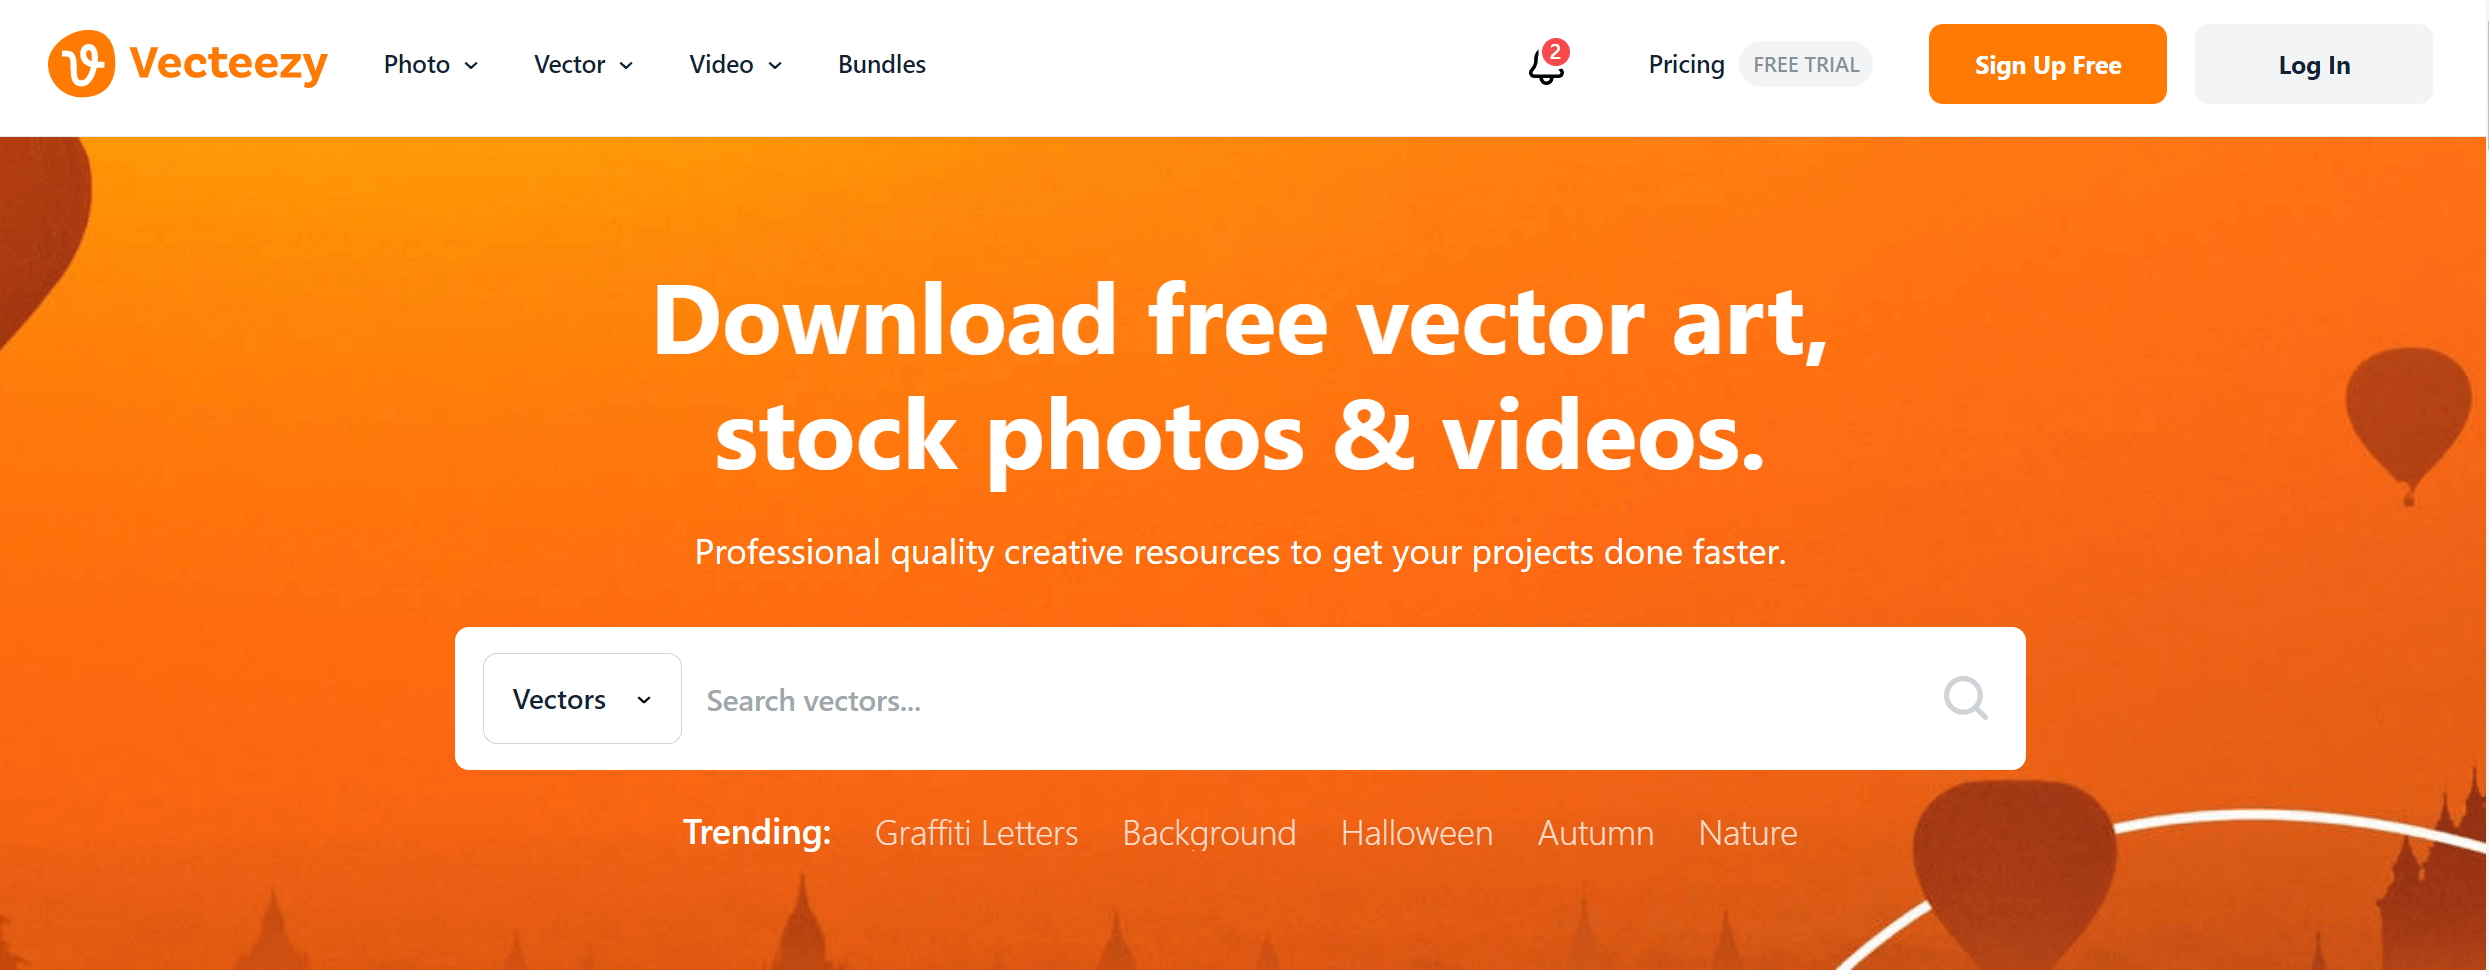 图片素材网站Vecteezy